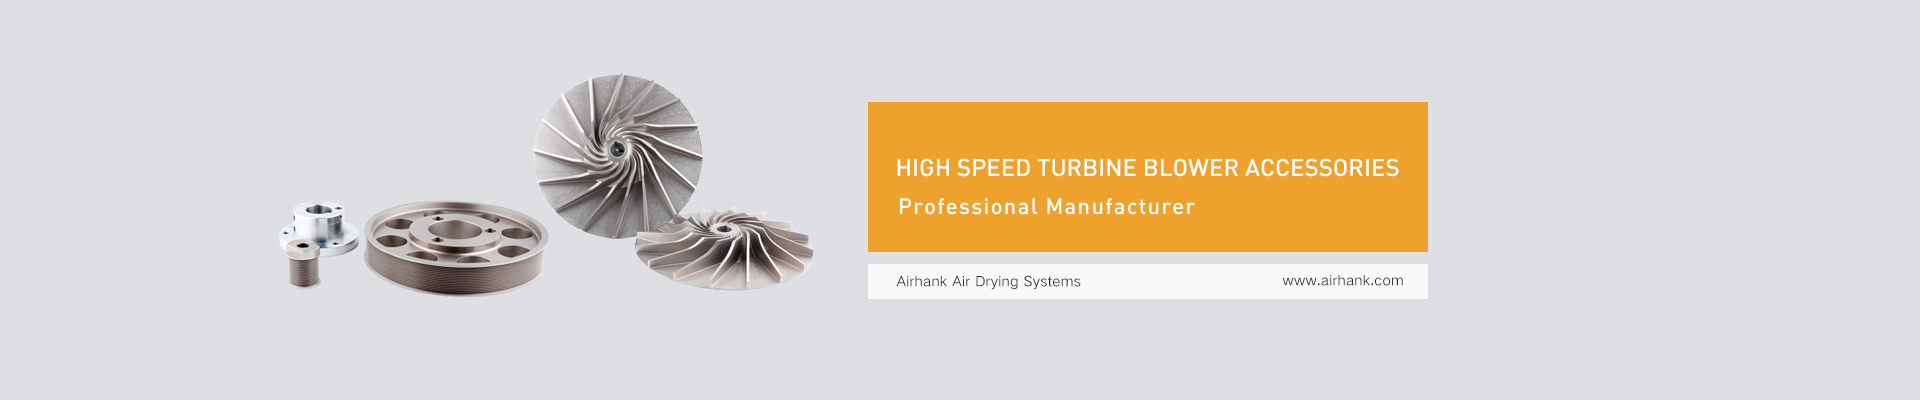 High speed turbine blower accessories